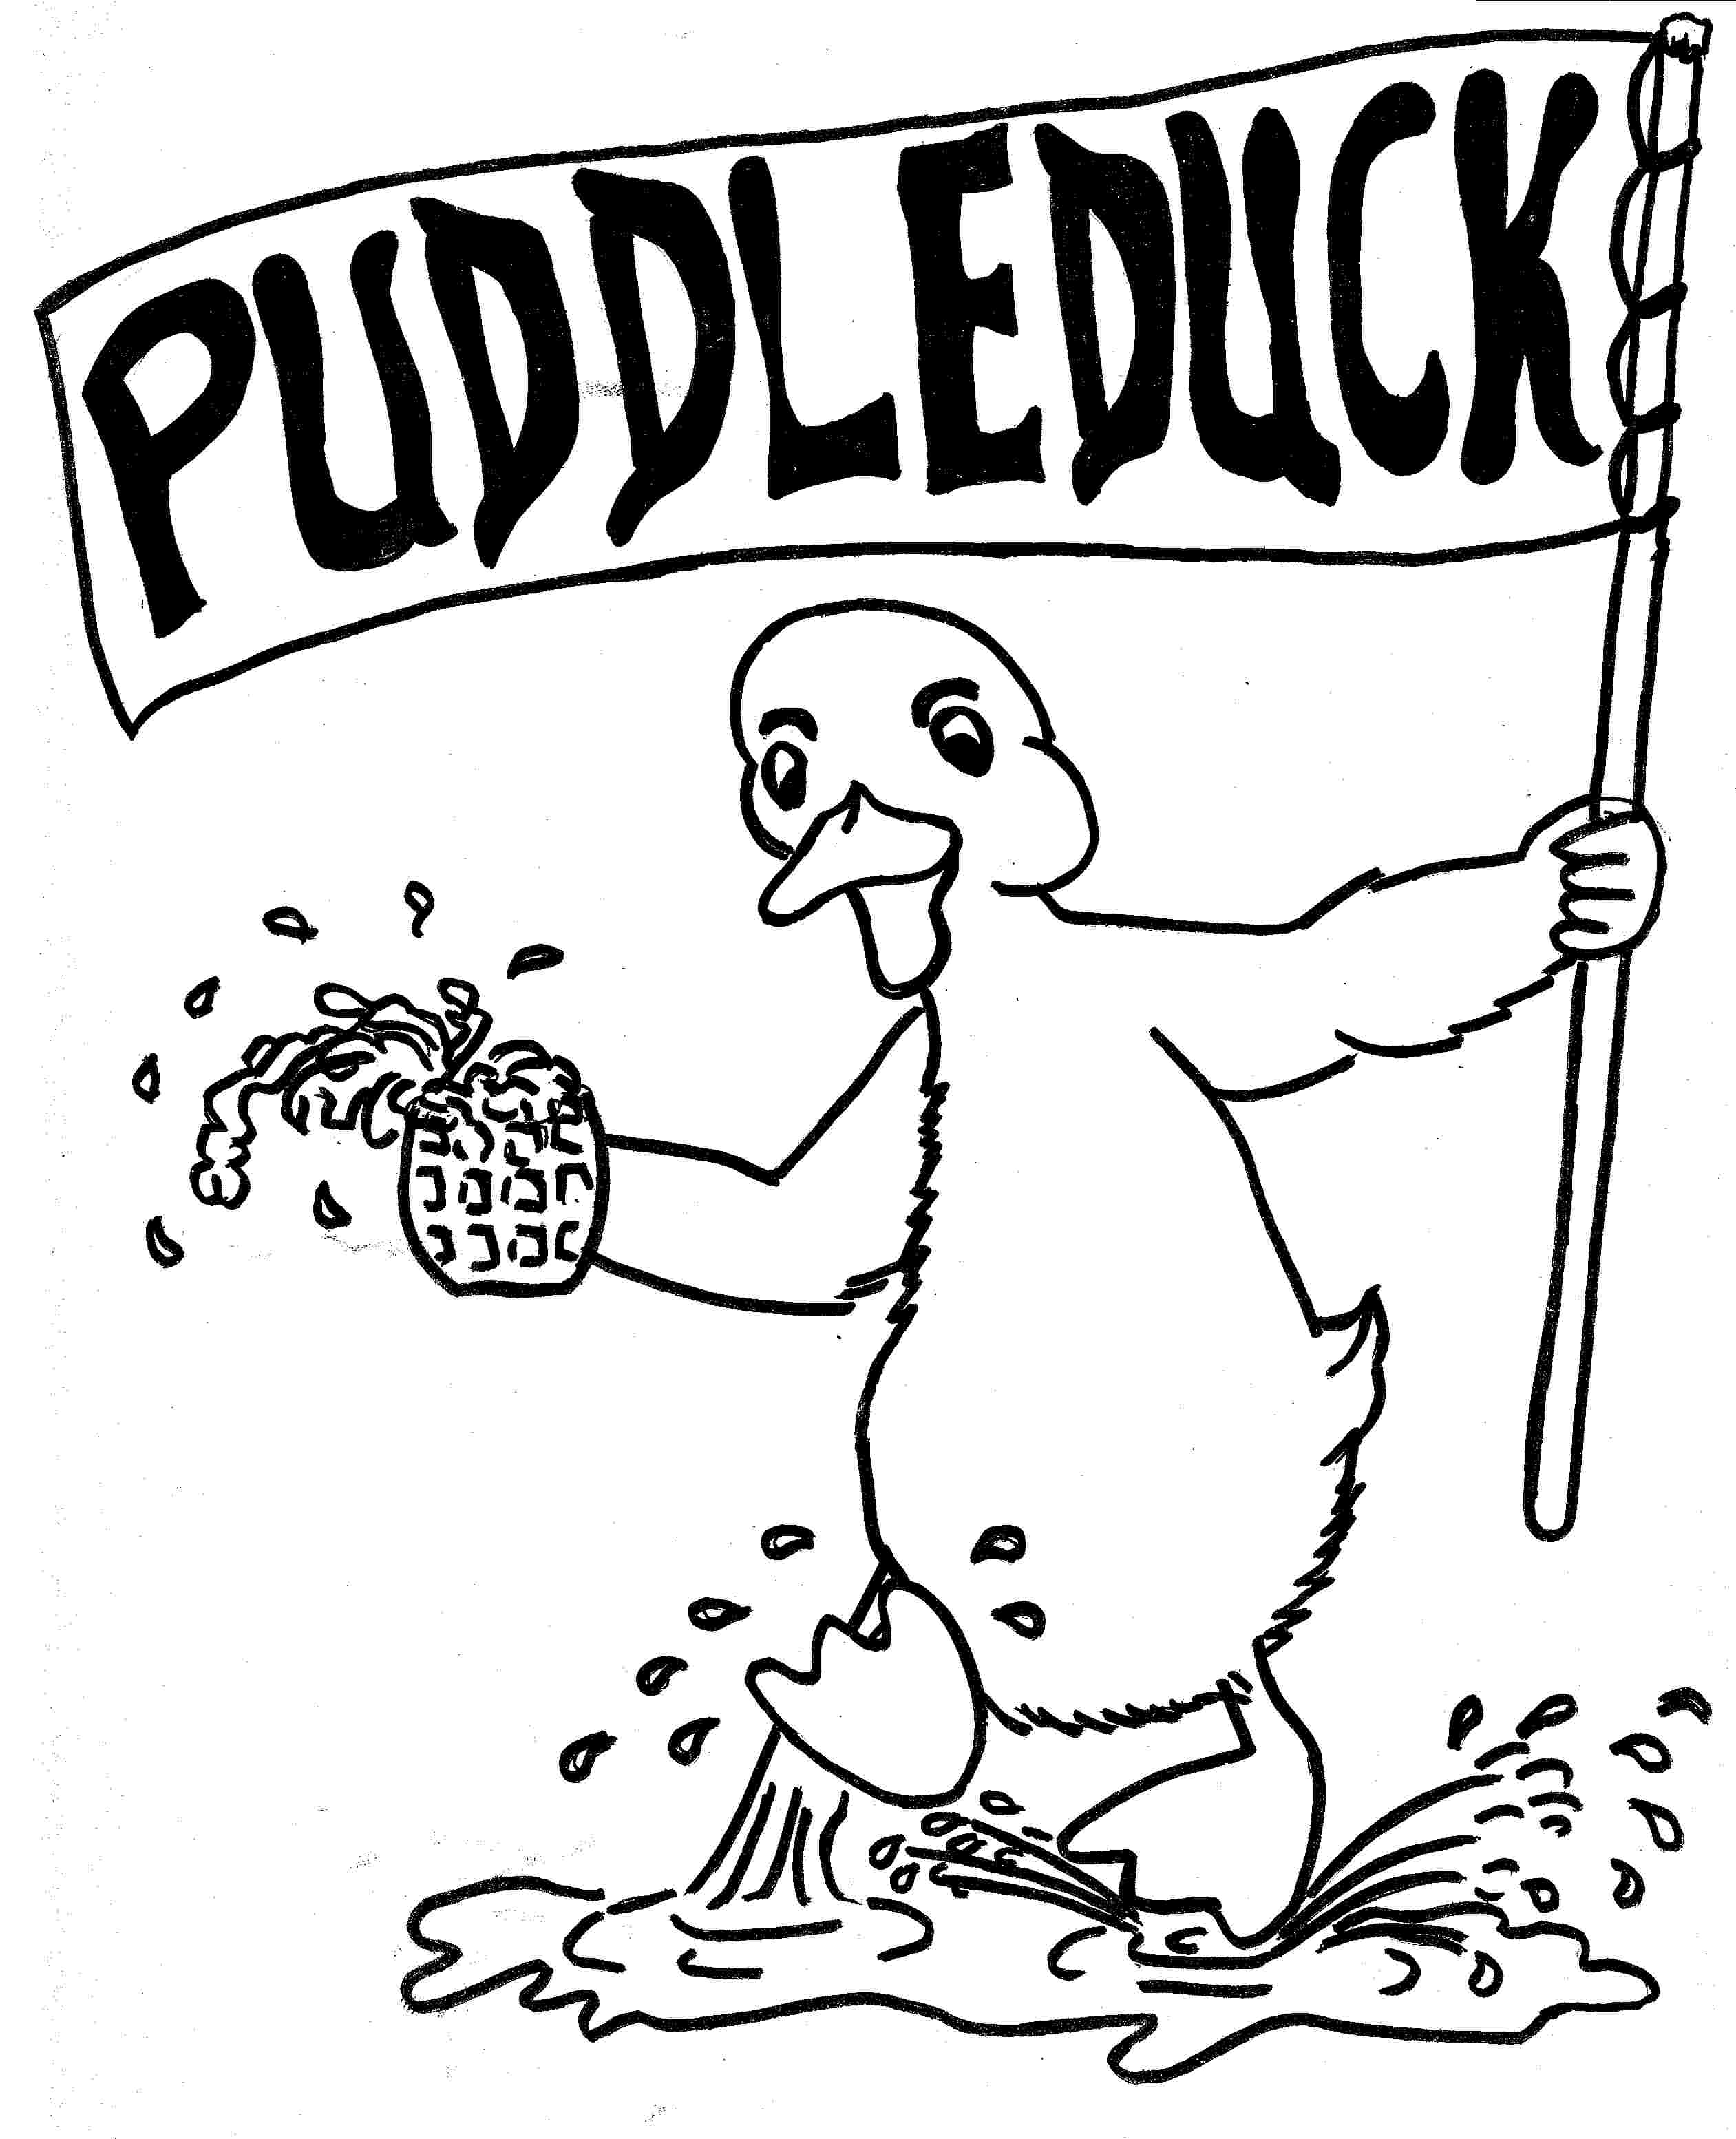 Puddleduck Logo